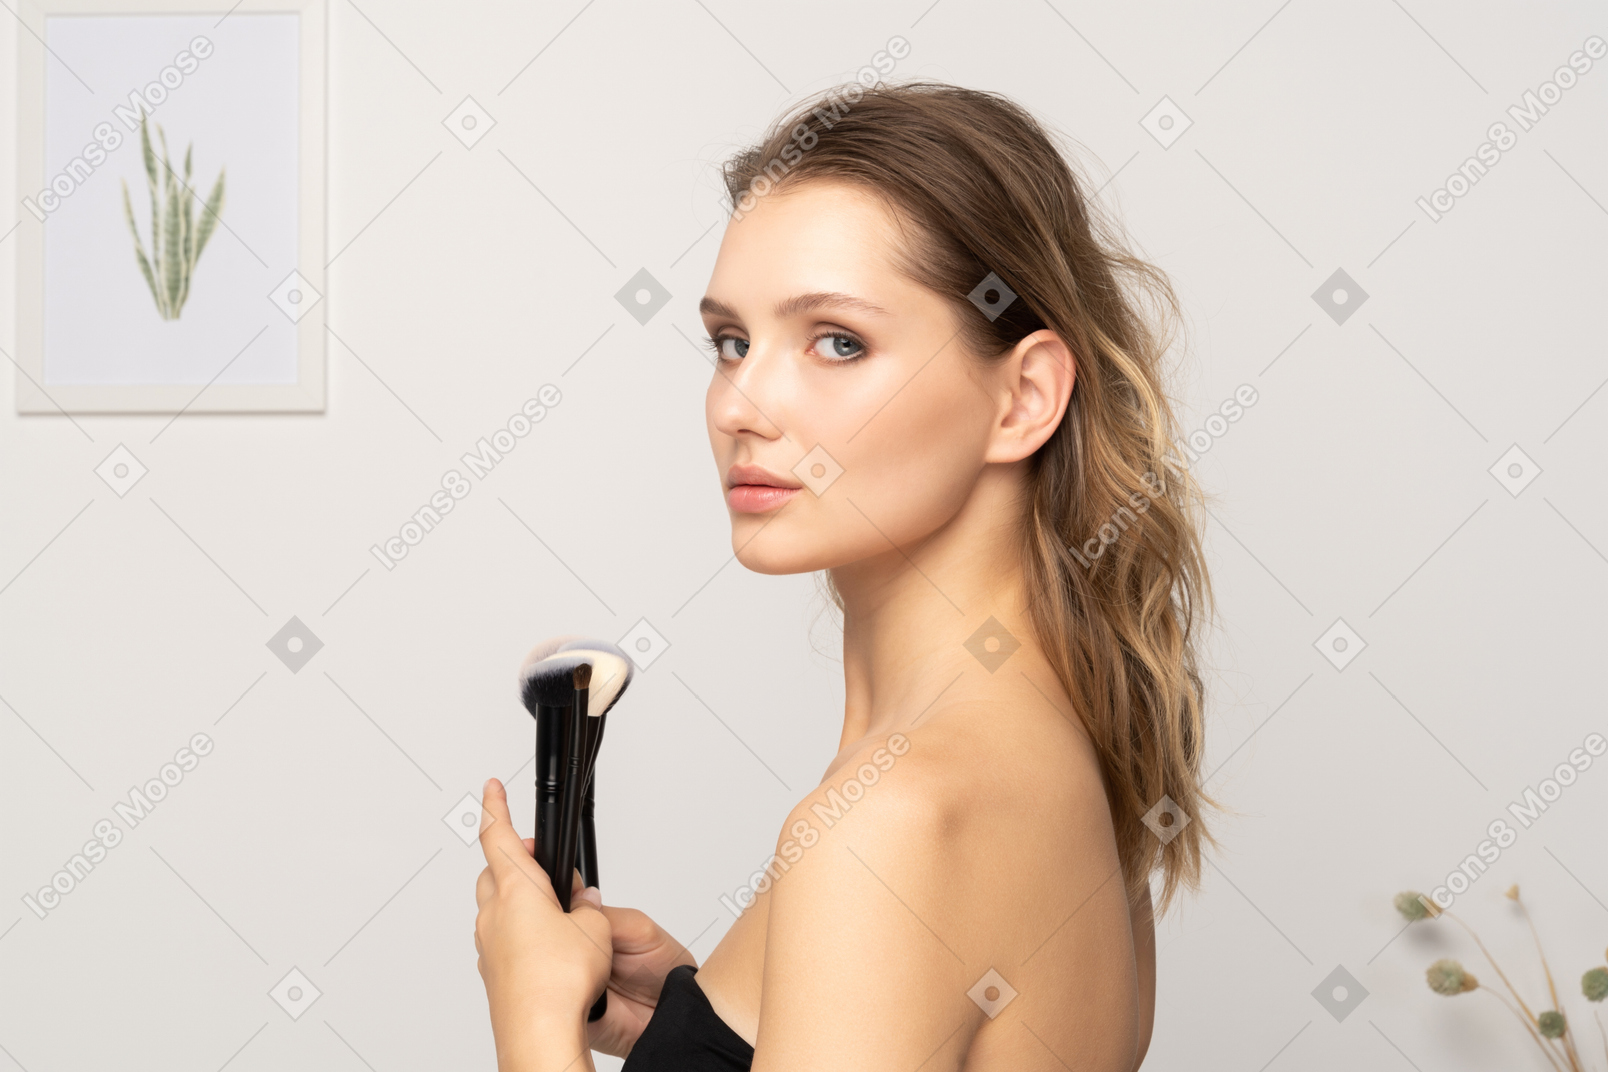 Вид сбоку чувственной молодой женщины, держащей кисти для макияжа